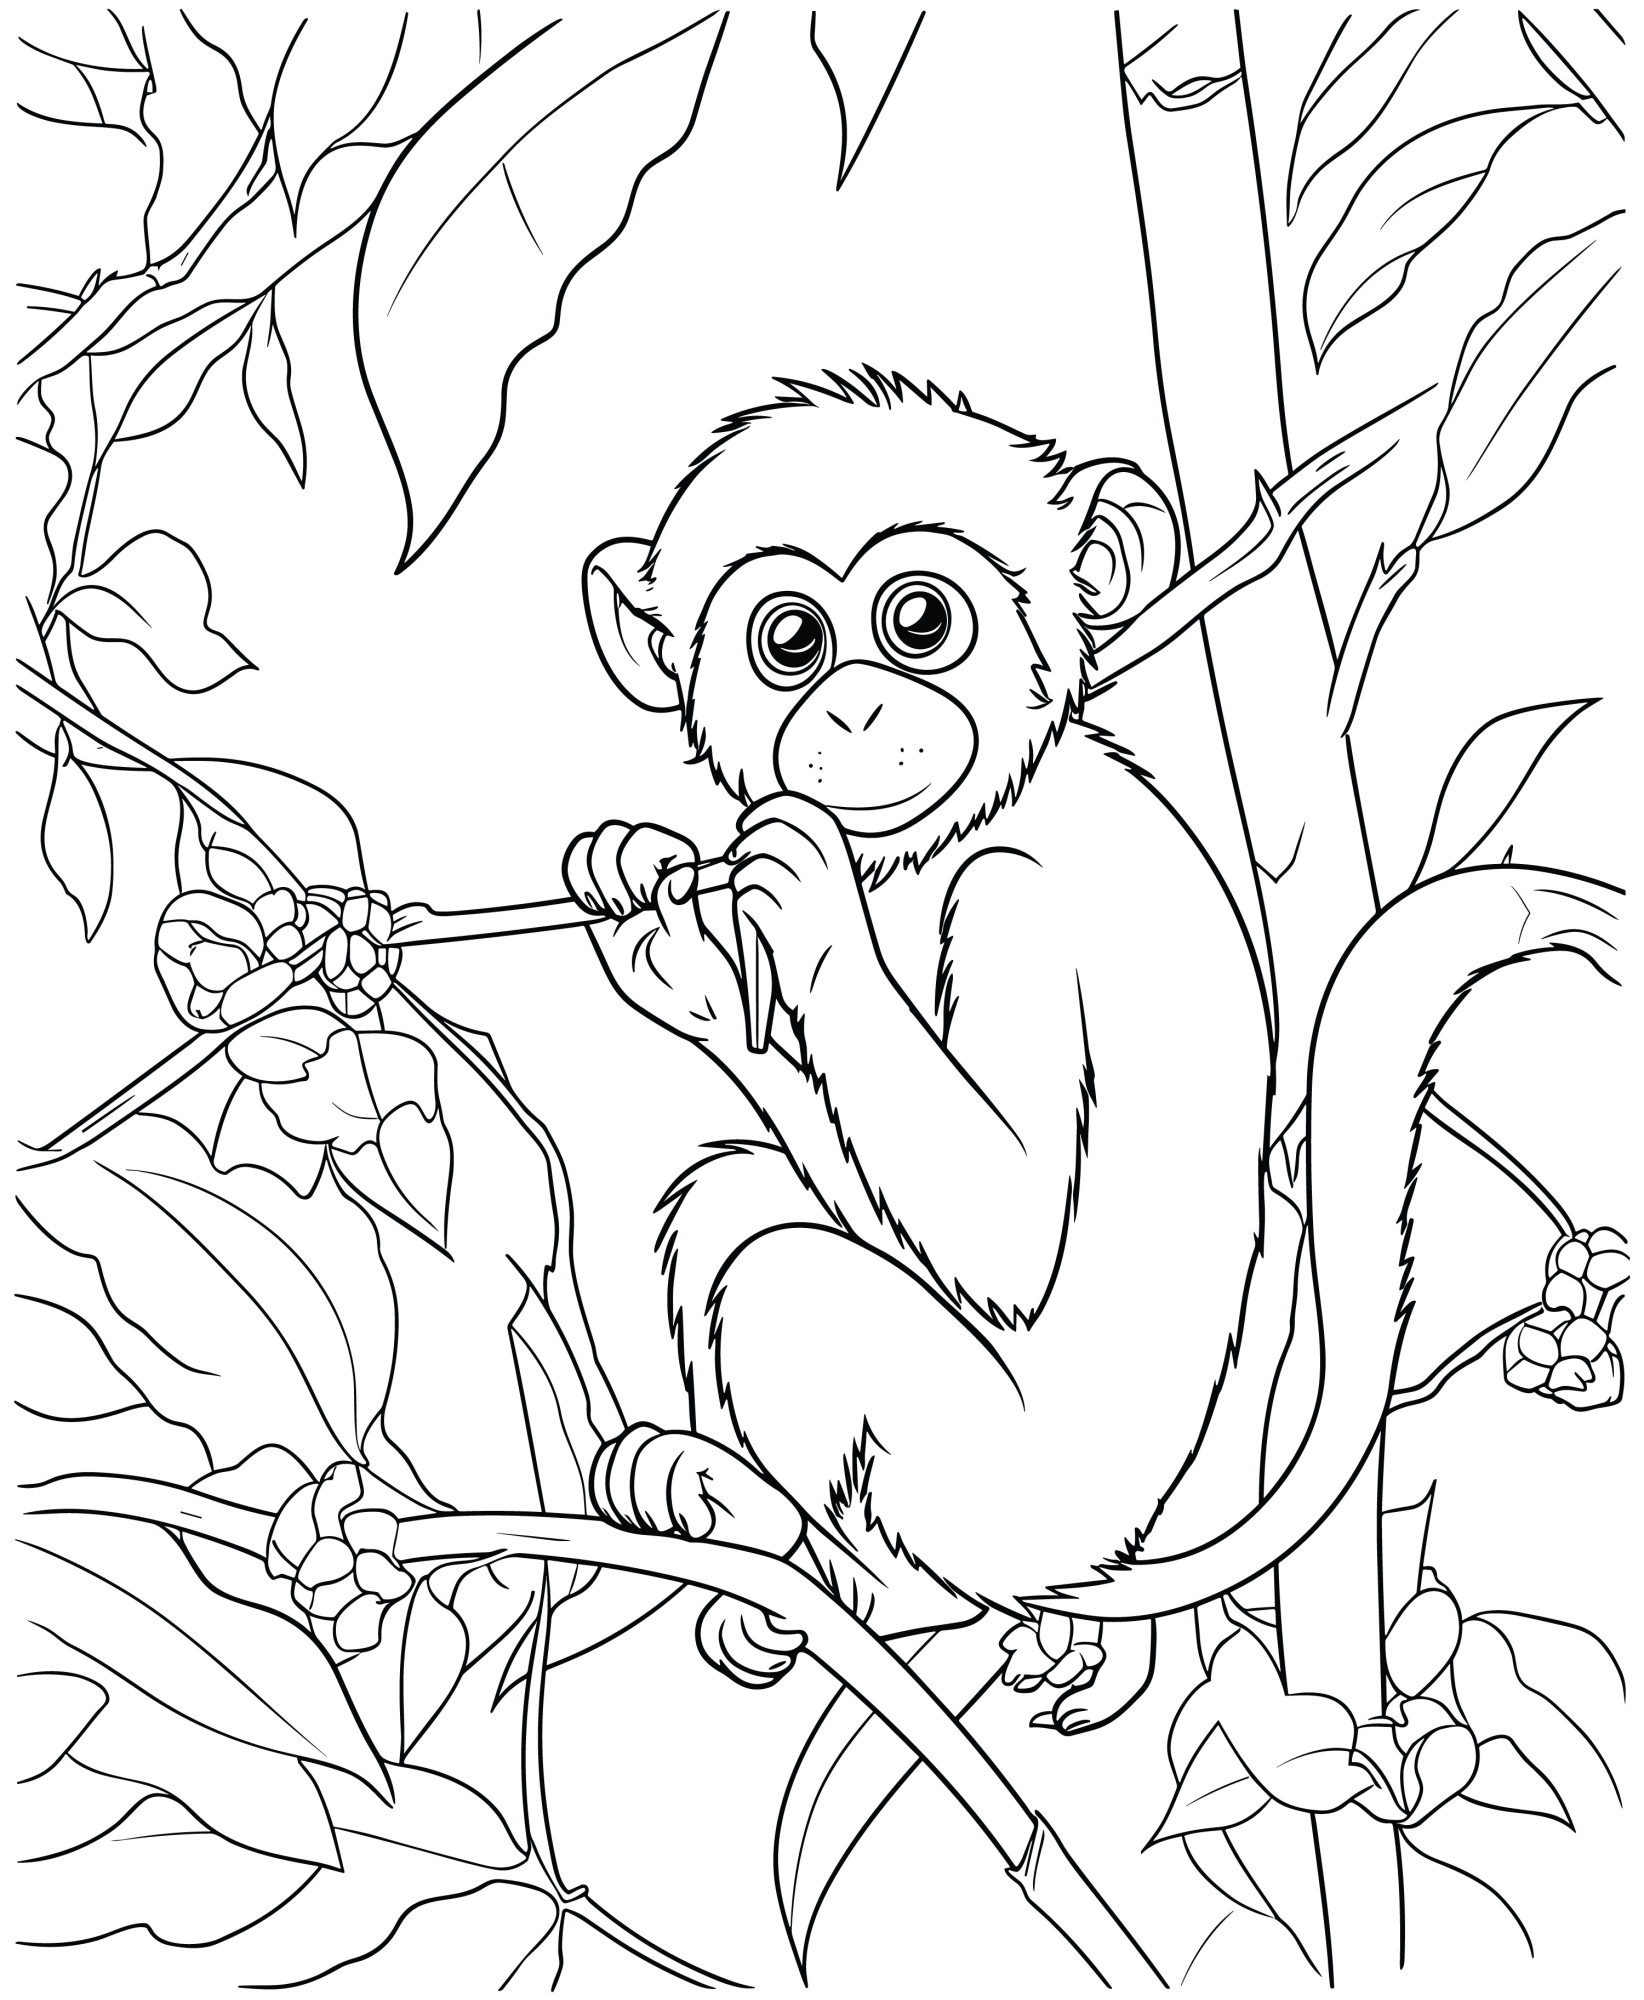 Раскраска для детей: ловкая обезьяна сидит на ветке дерева